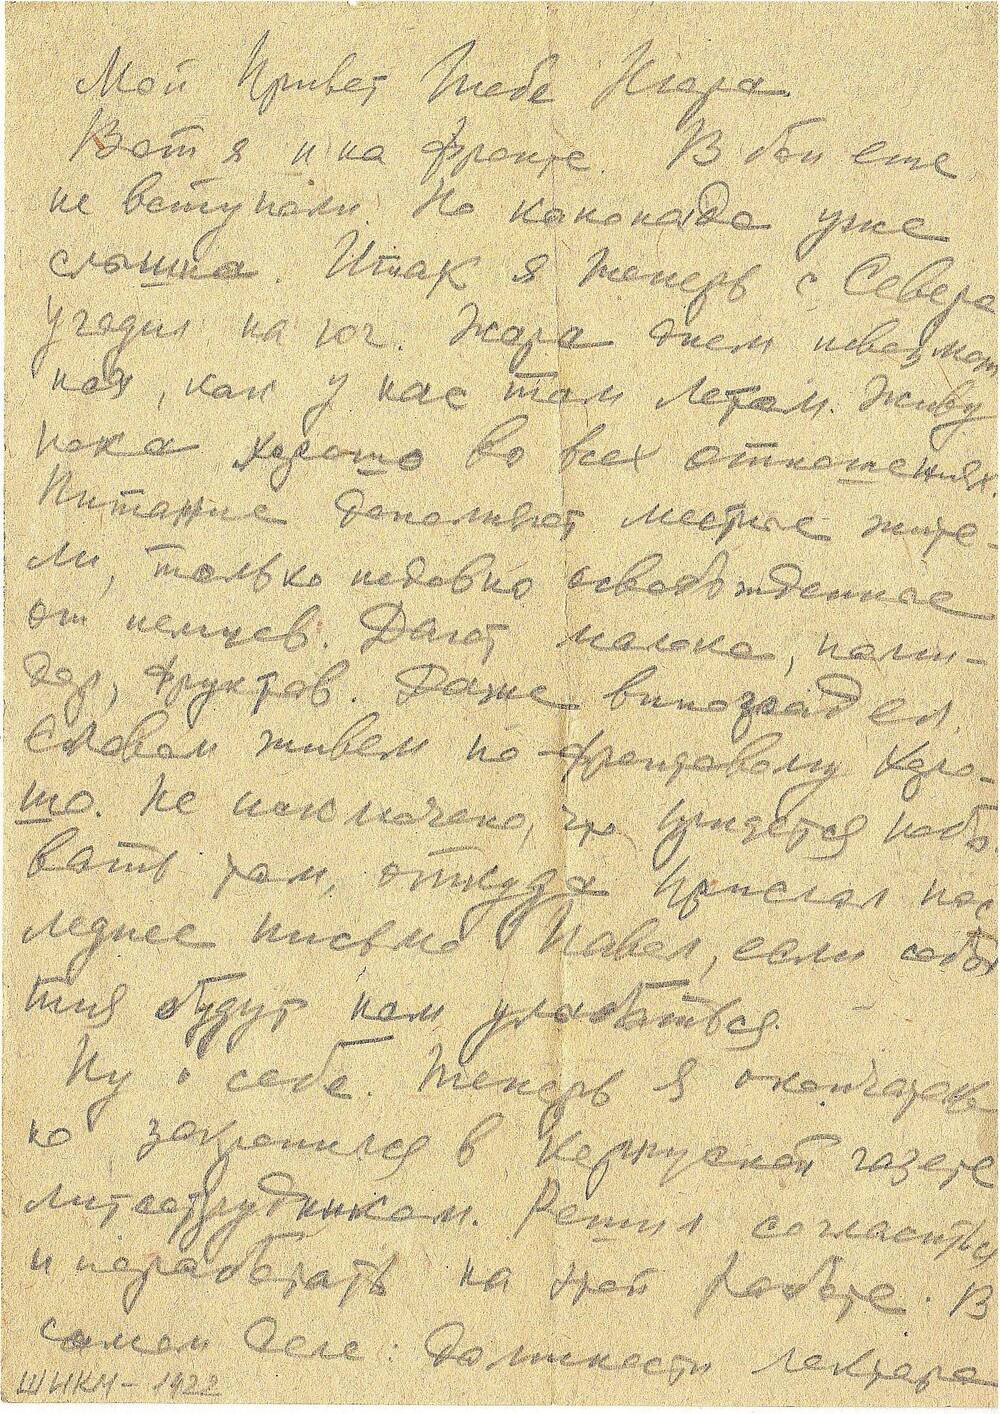 Письмо военное (с фронта) Носкова Василия сестре Нюре от 7/X 43 г.